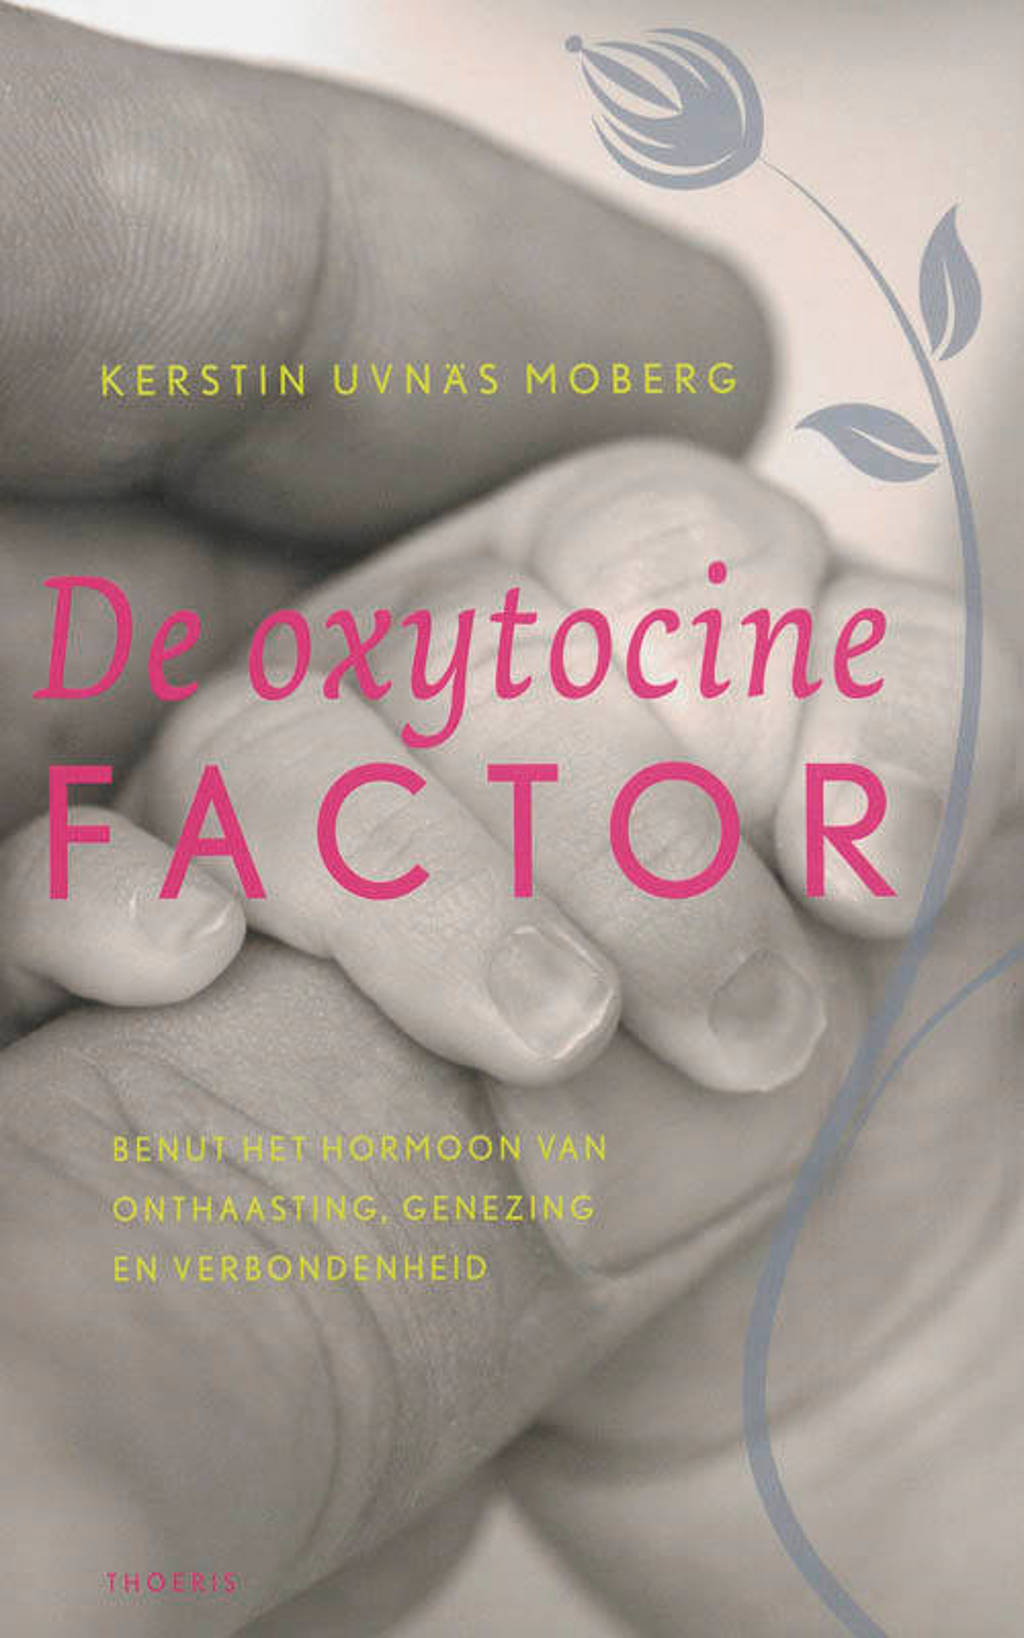 De Oxytocine factor - K. Uvnas Moberg